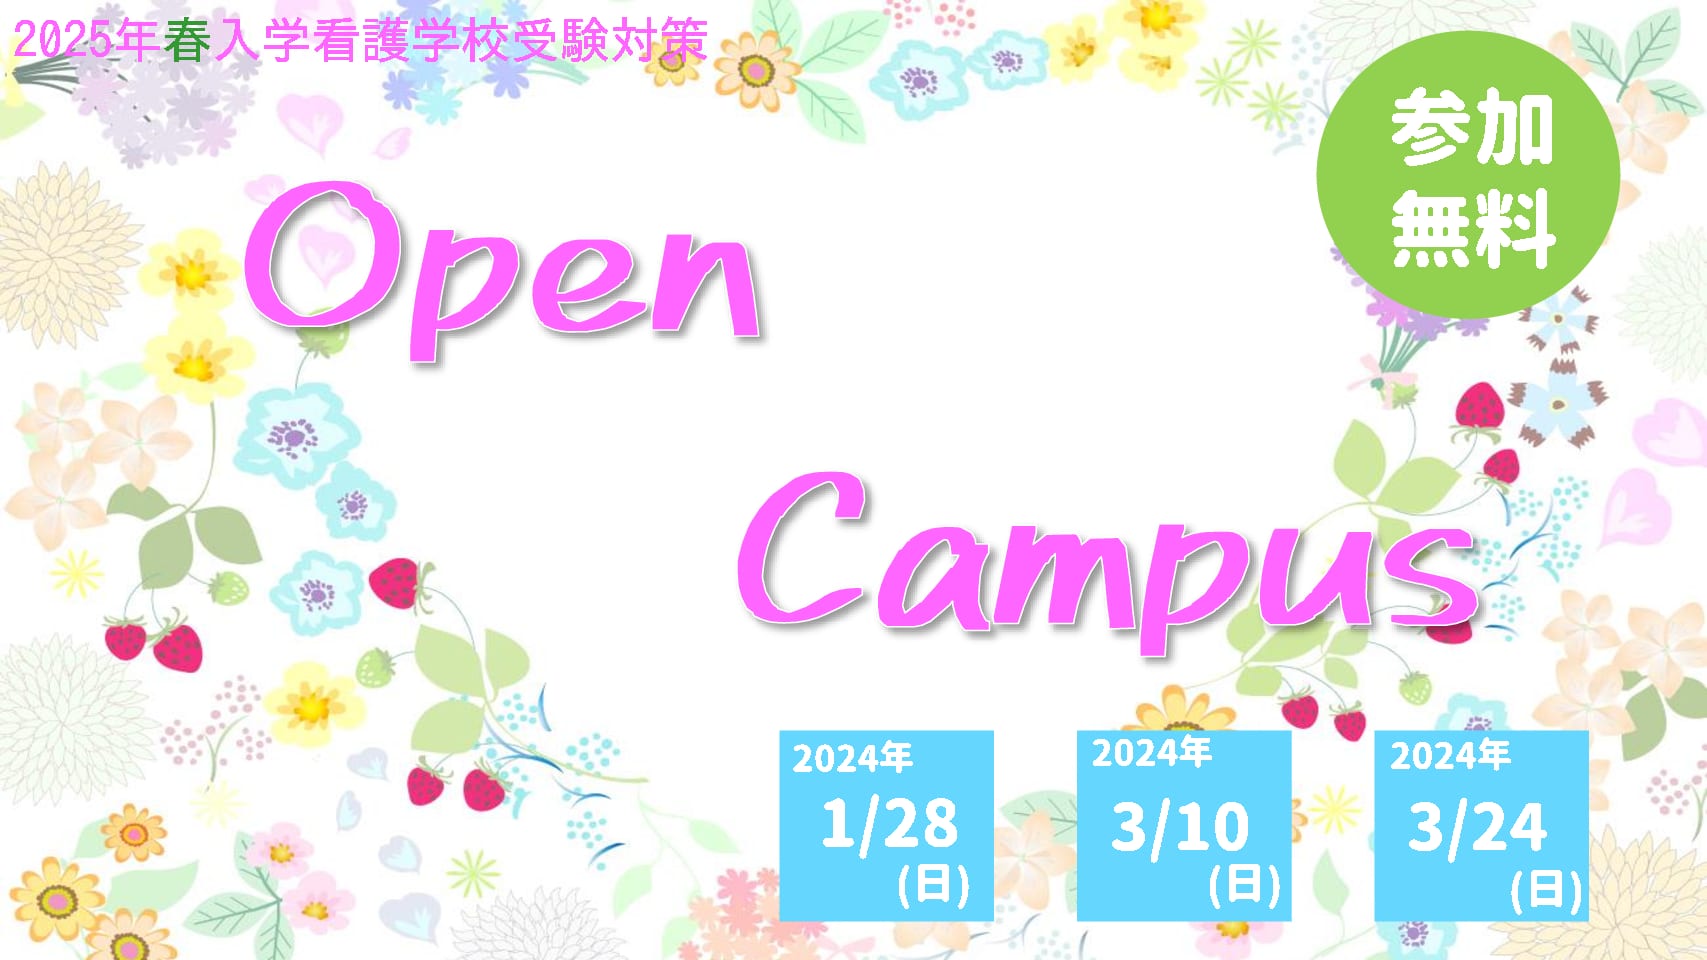 【看護学校受験対策】2024年度(2025年4月入学)向けオープンキャンパス